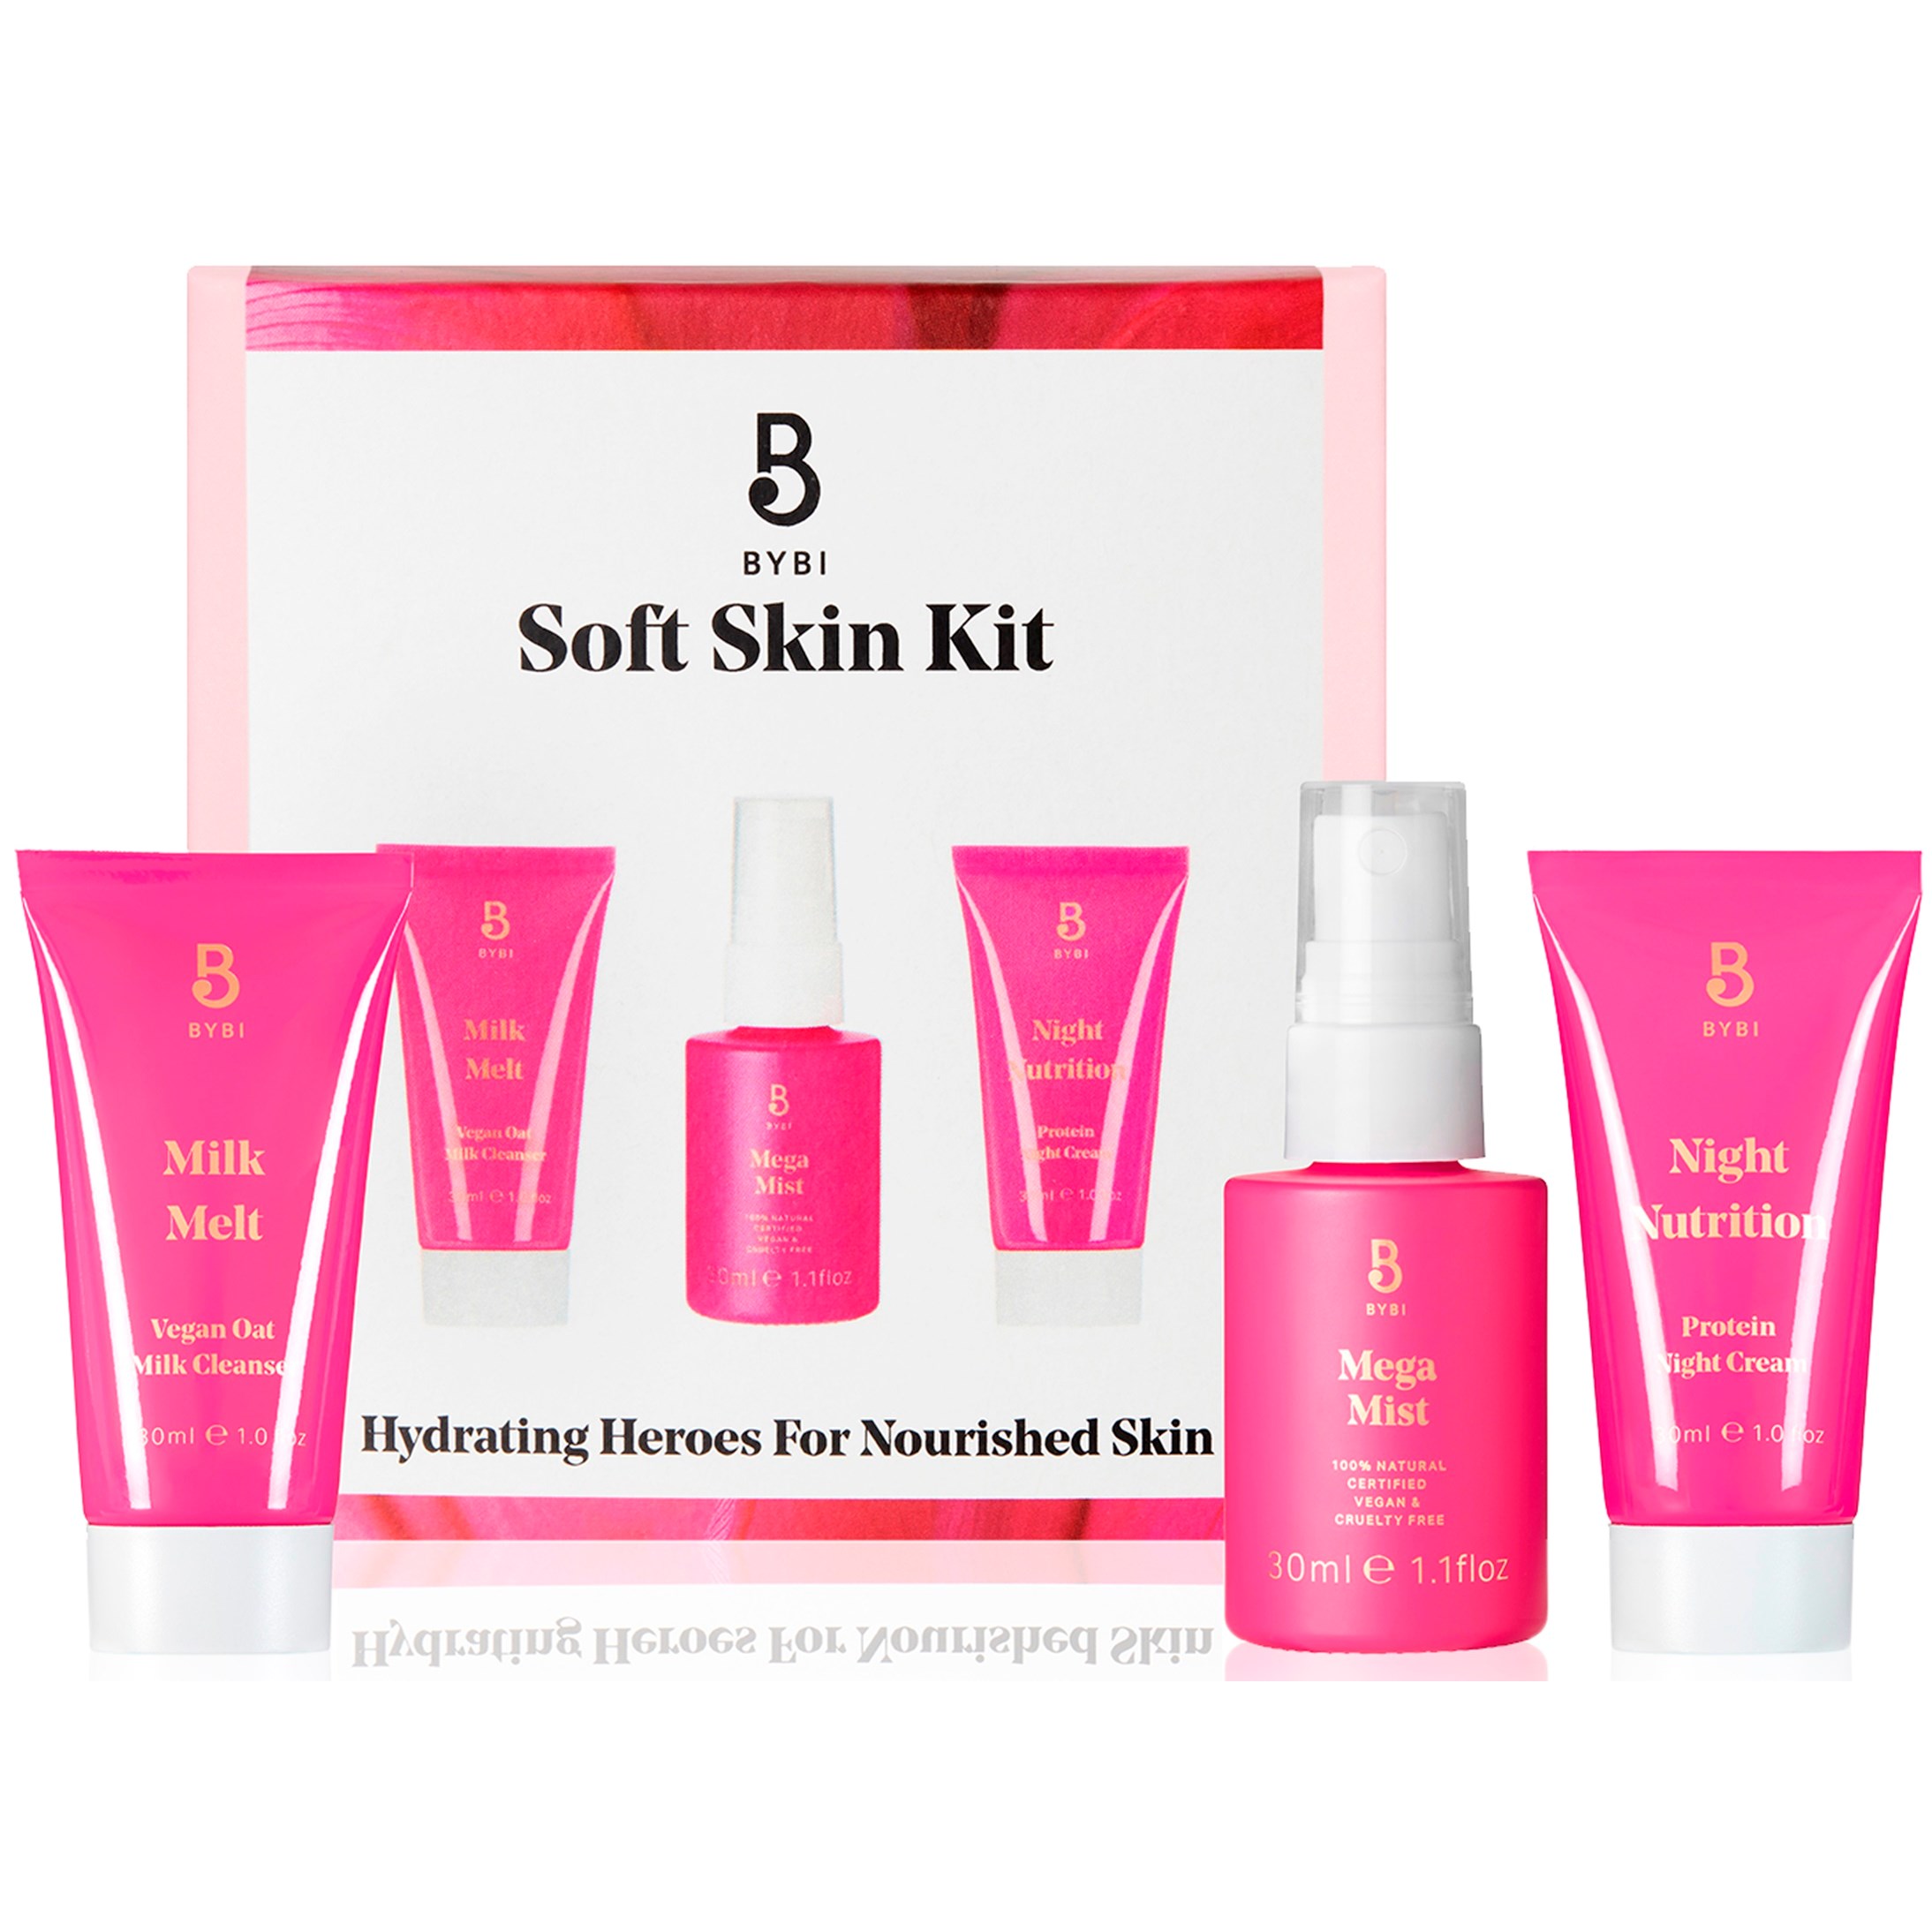 BYBI Beauty Soft Skin Kit